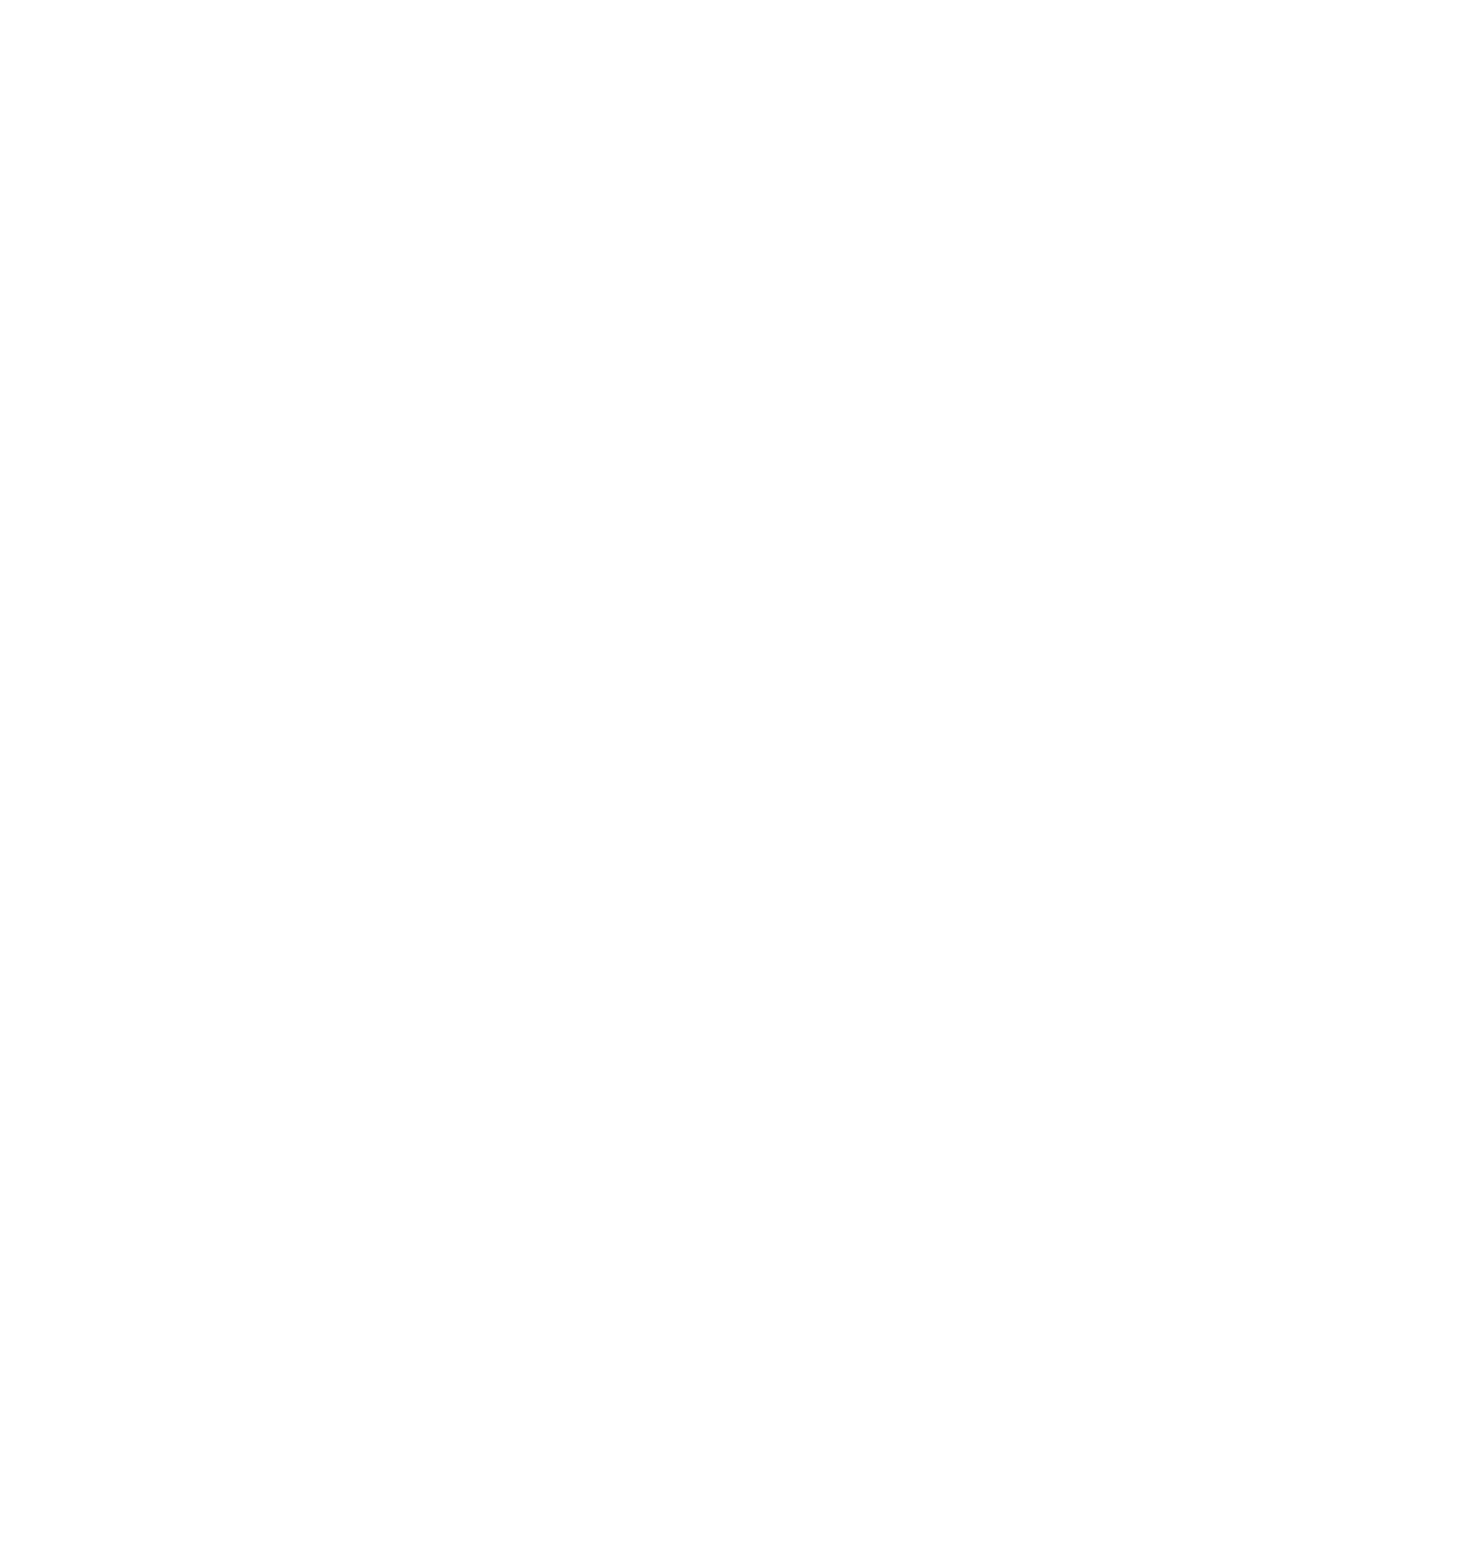 Mitsubishi Motors logo large for dark backgrounds (transparent PNG)